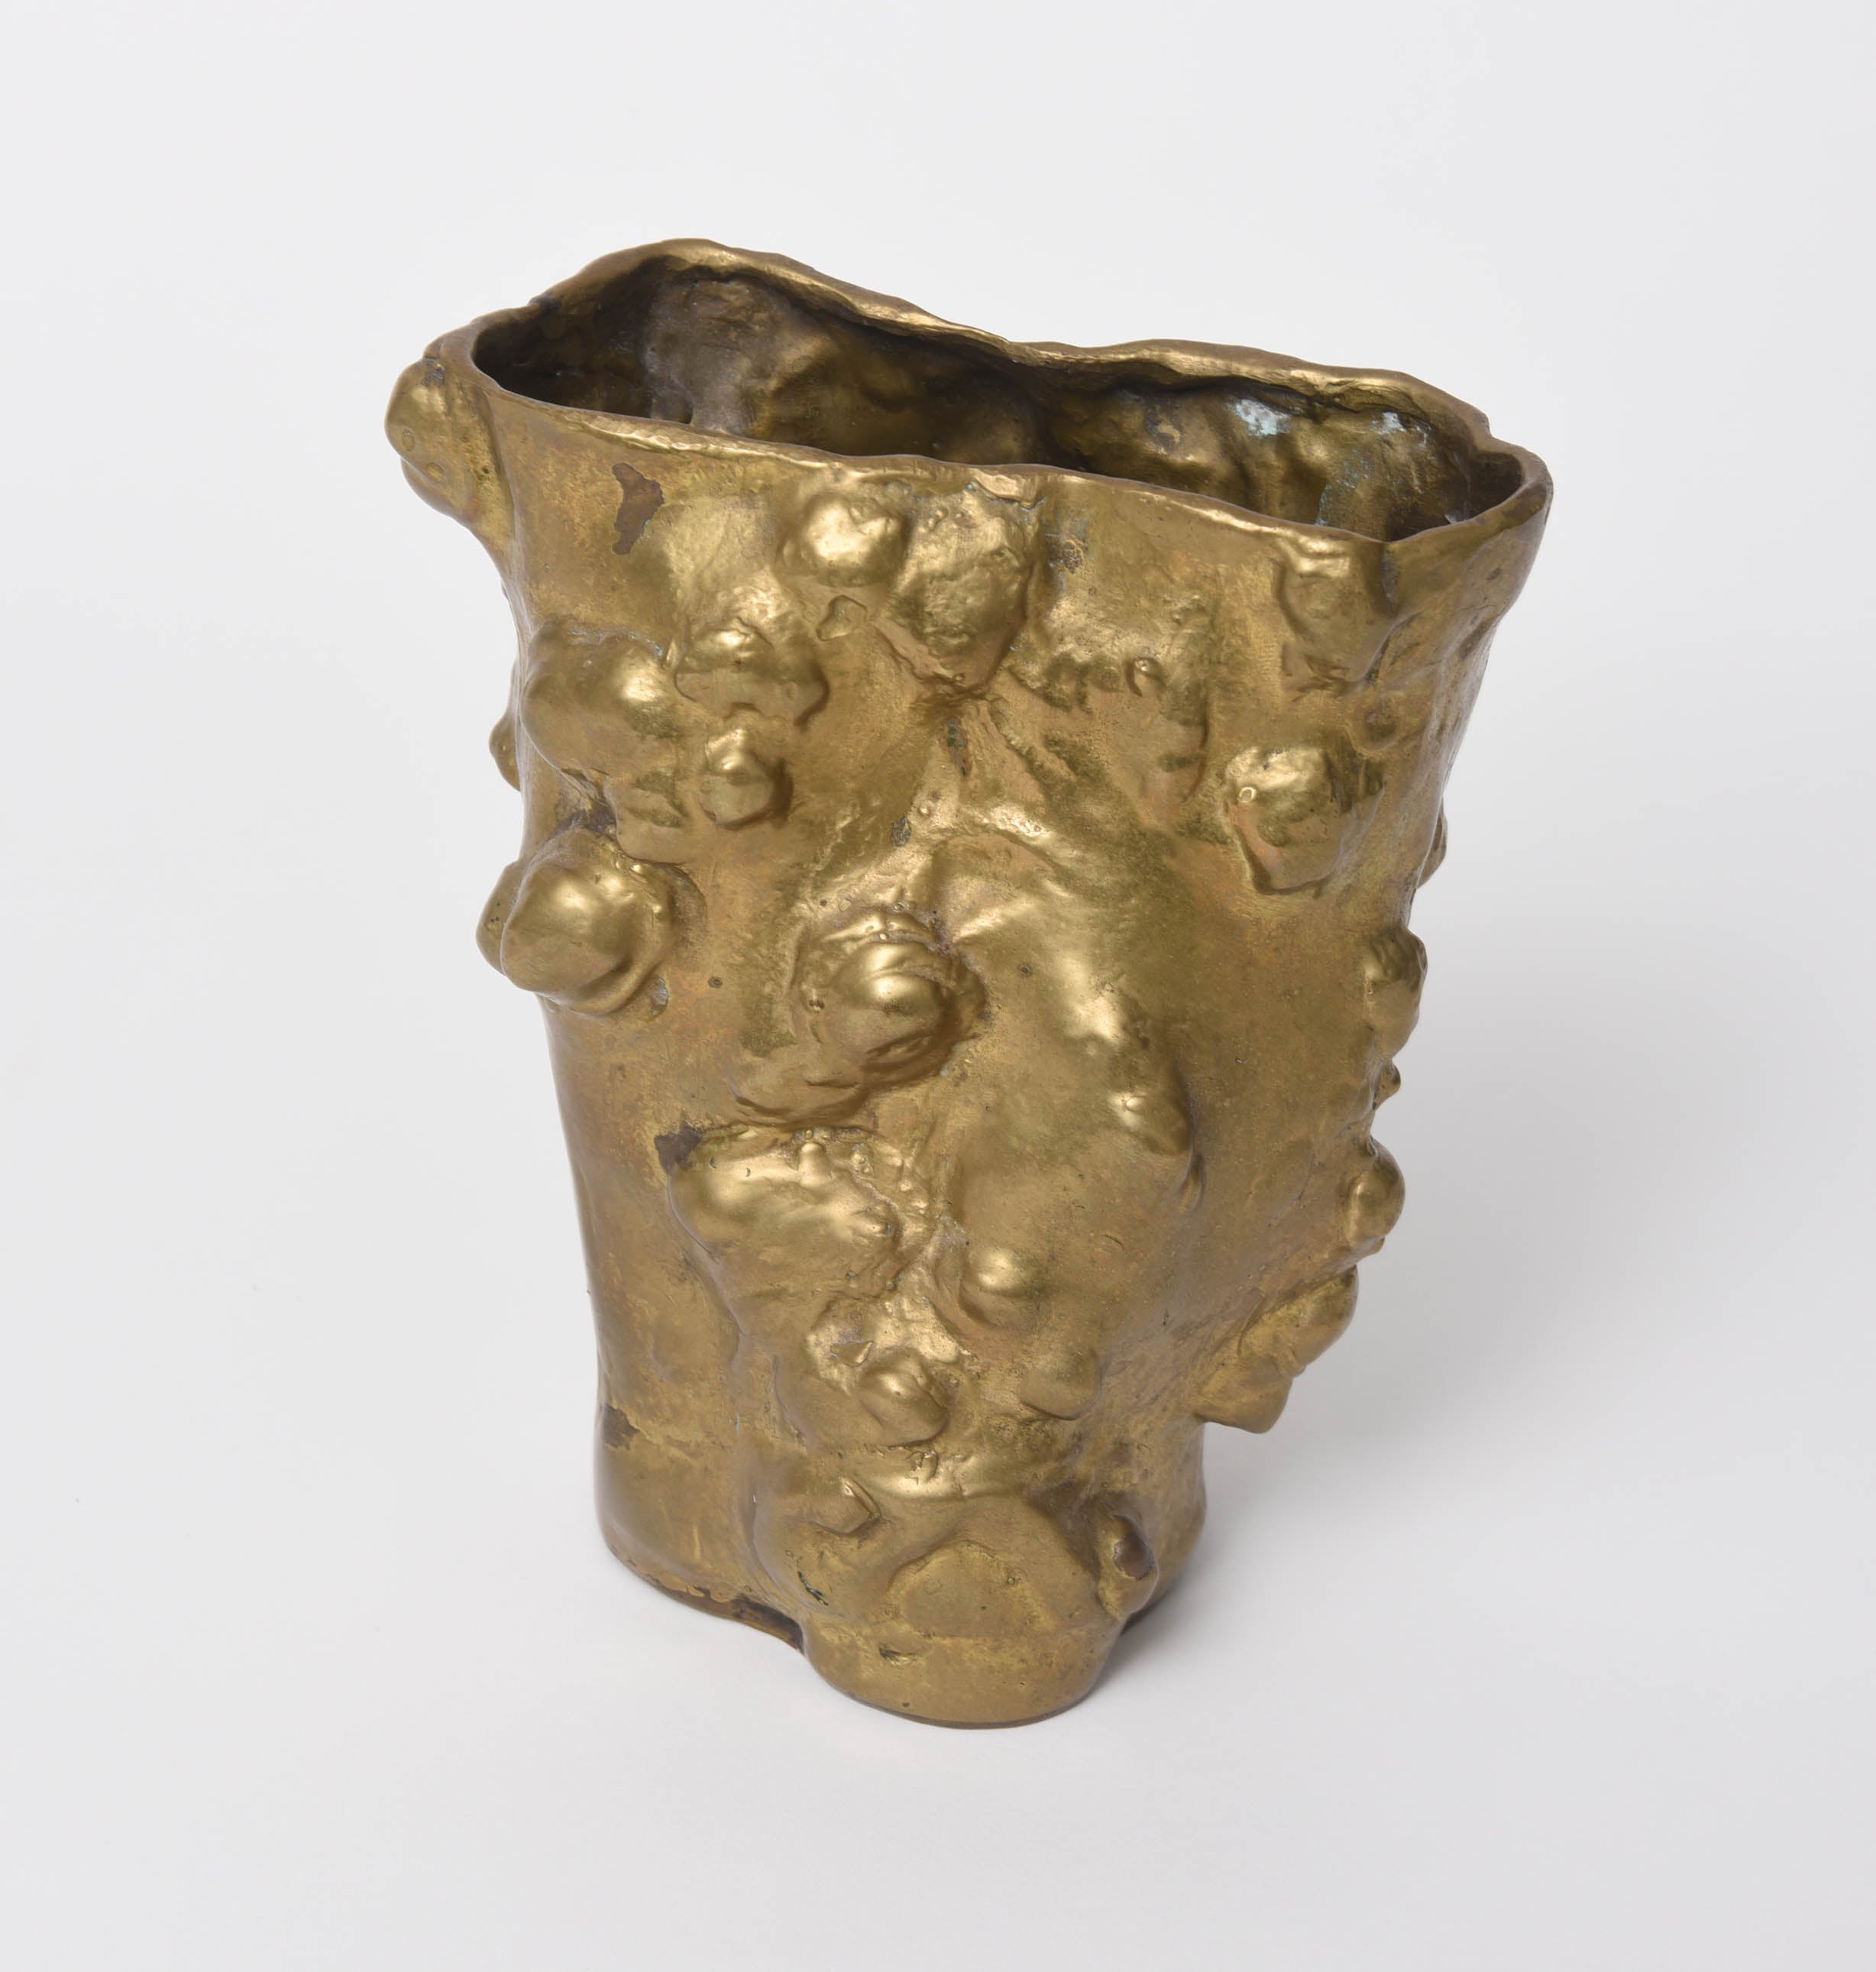 Rare Gabriella Crespi "Tronco" Gilt Bronze Vase, circa 1970s